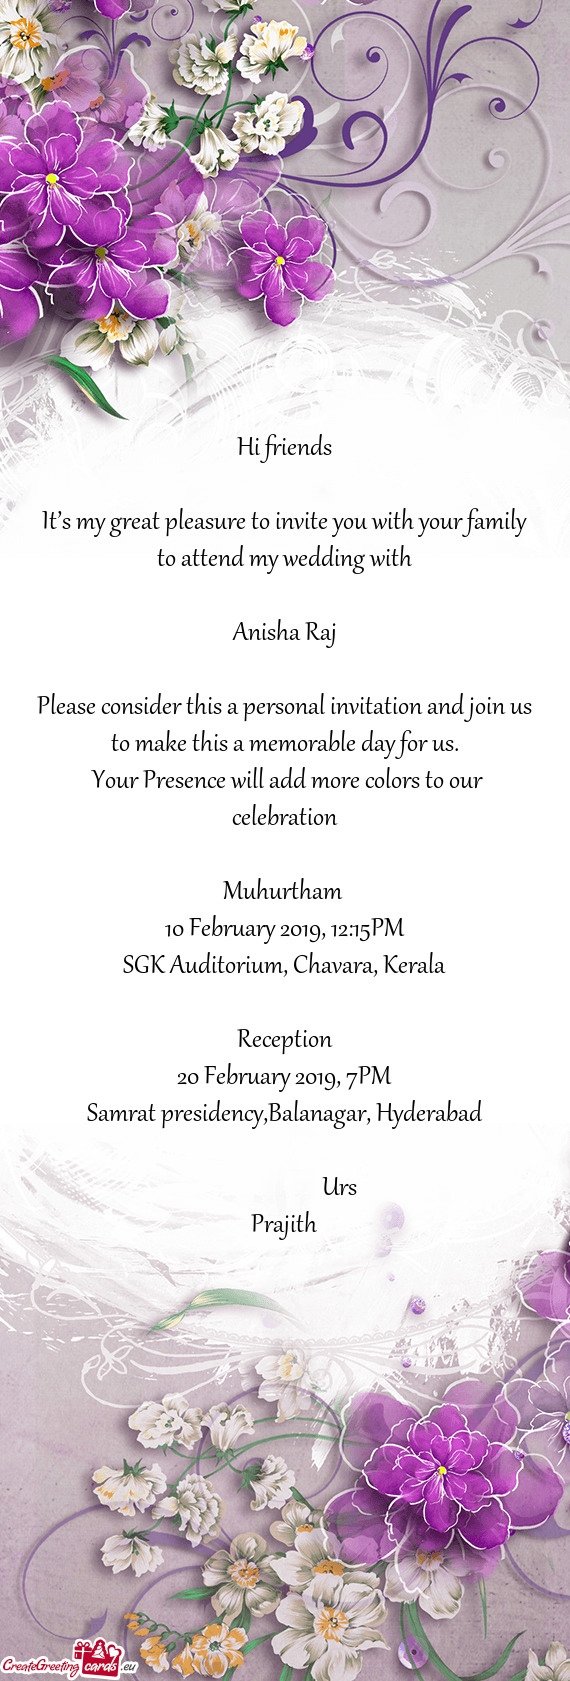 Kerala
 
 Reception
 20 February 2019